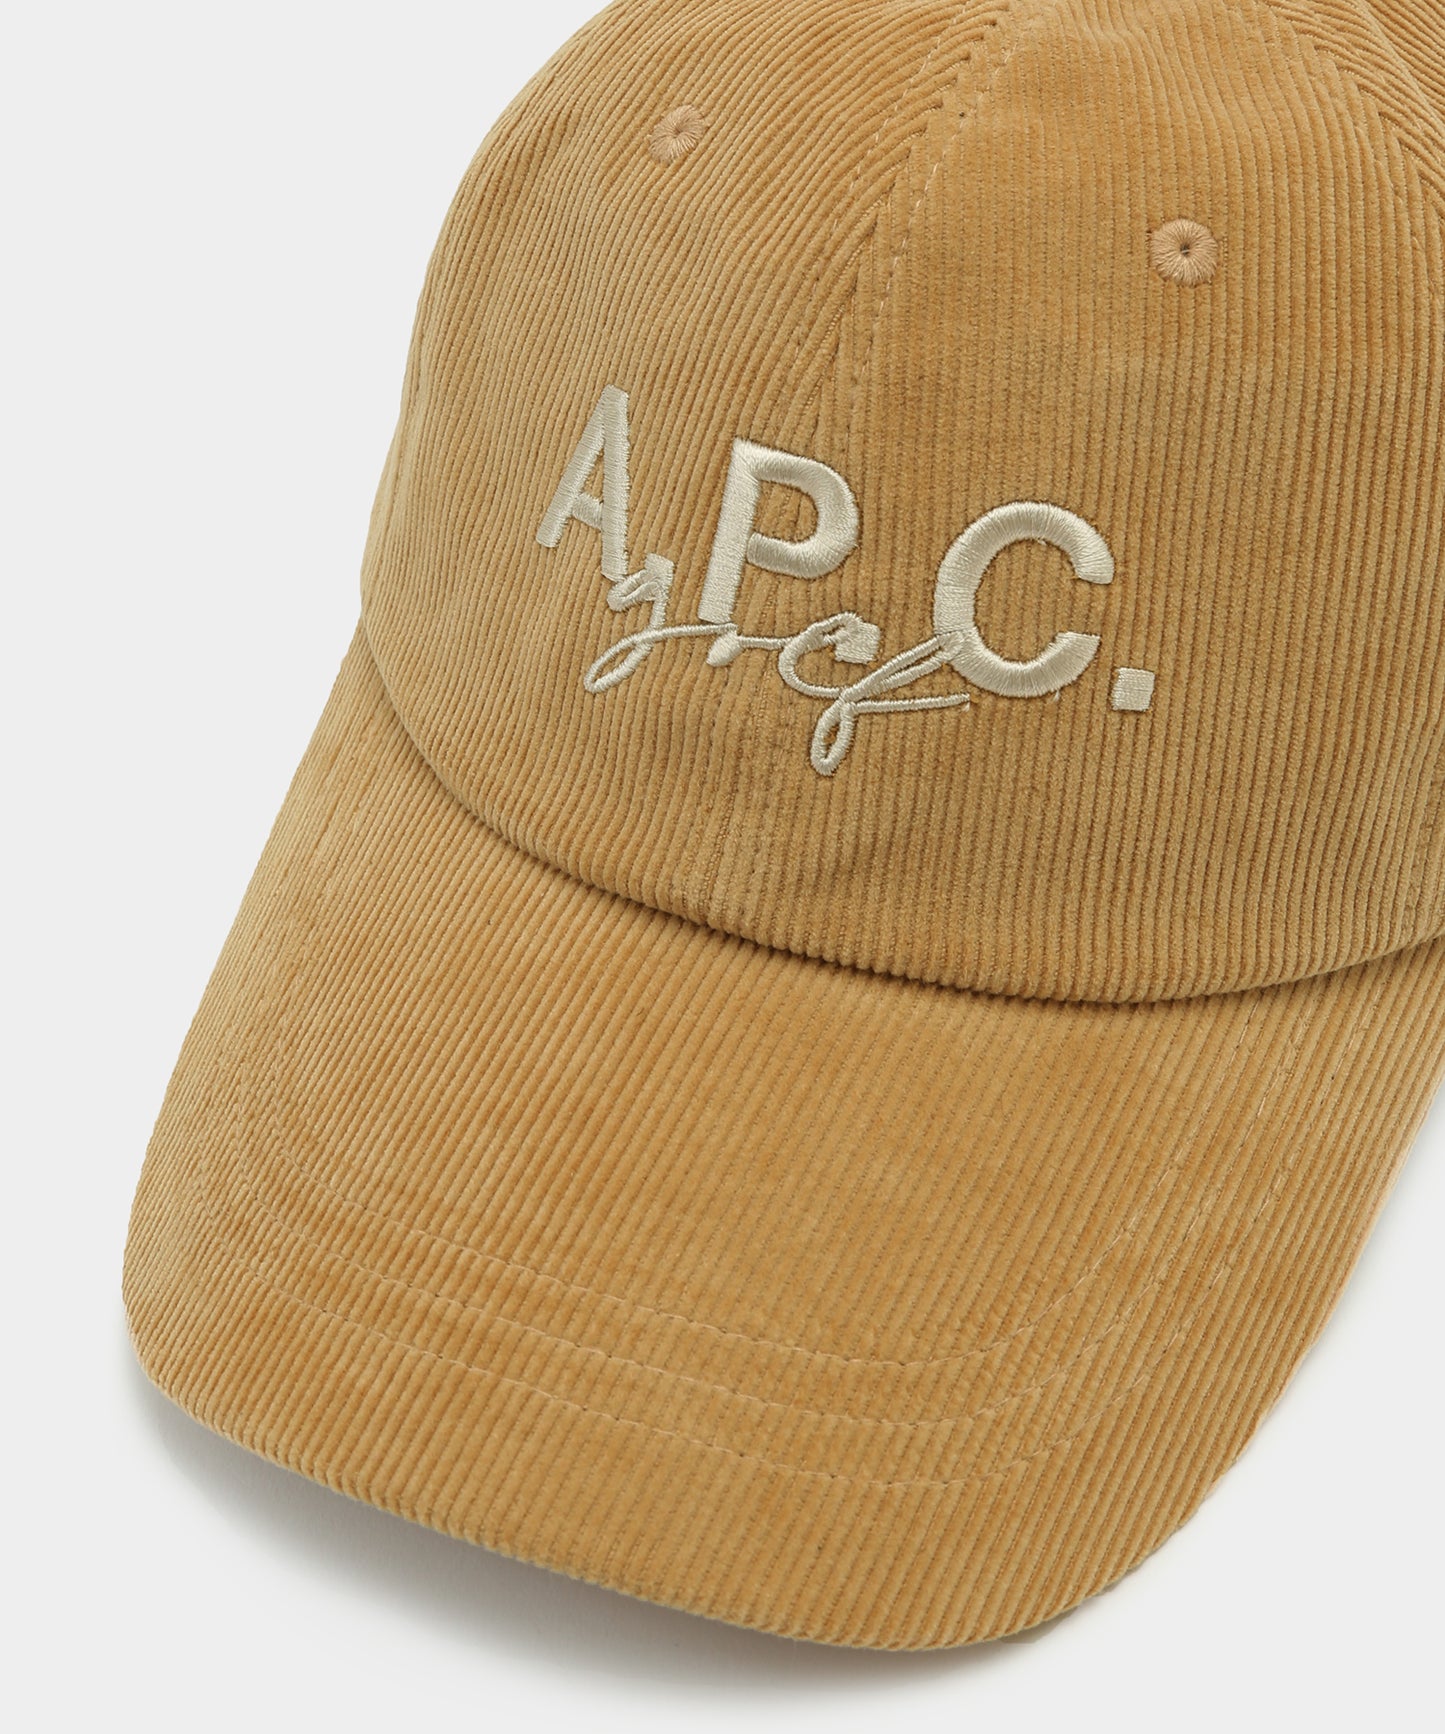 A.P.C.GOLF CAP CAMEL